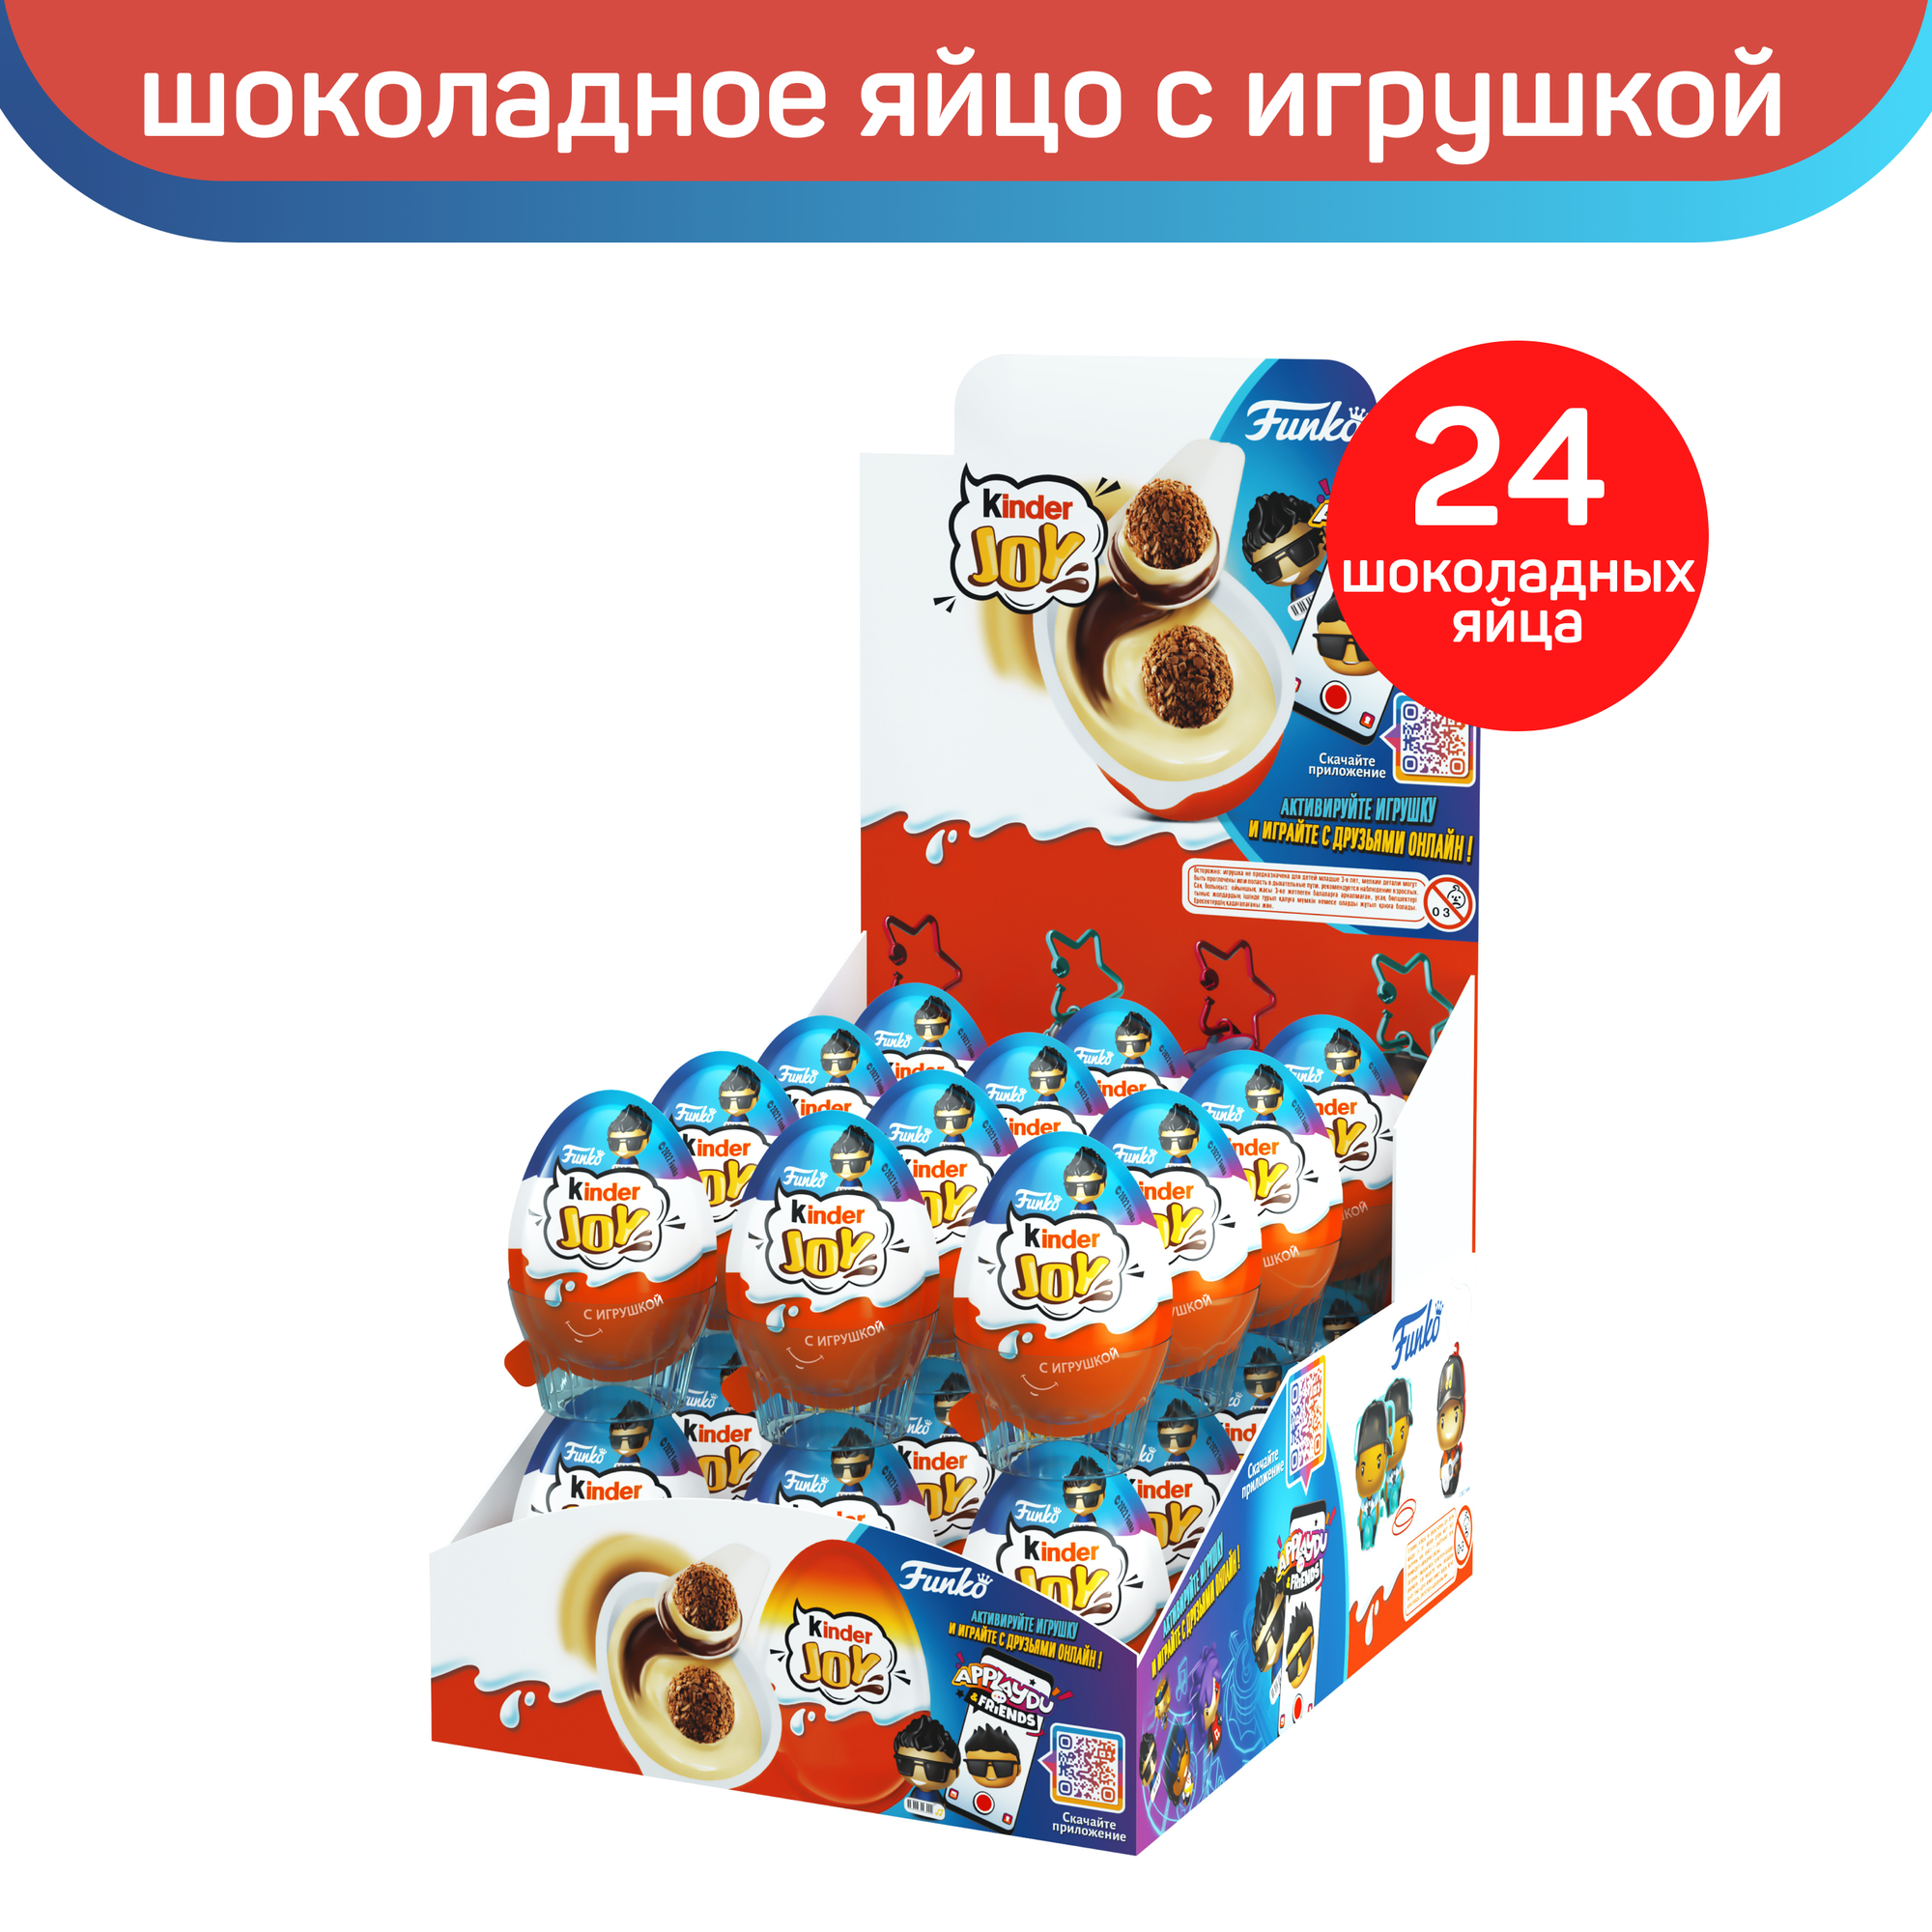 Шоколадное яйцо Kinder Joy с игрушкой, Funko Music Base, коллекция для мальчиков, 24 шт по 20 г